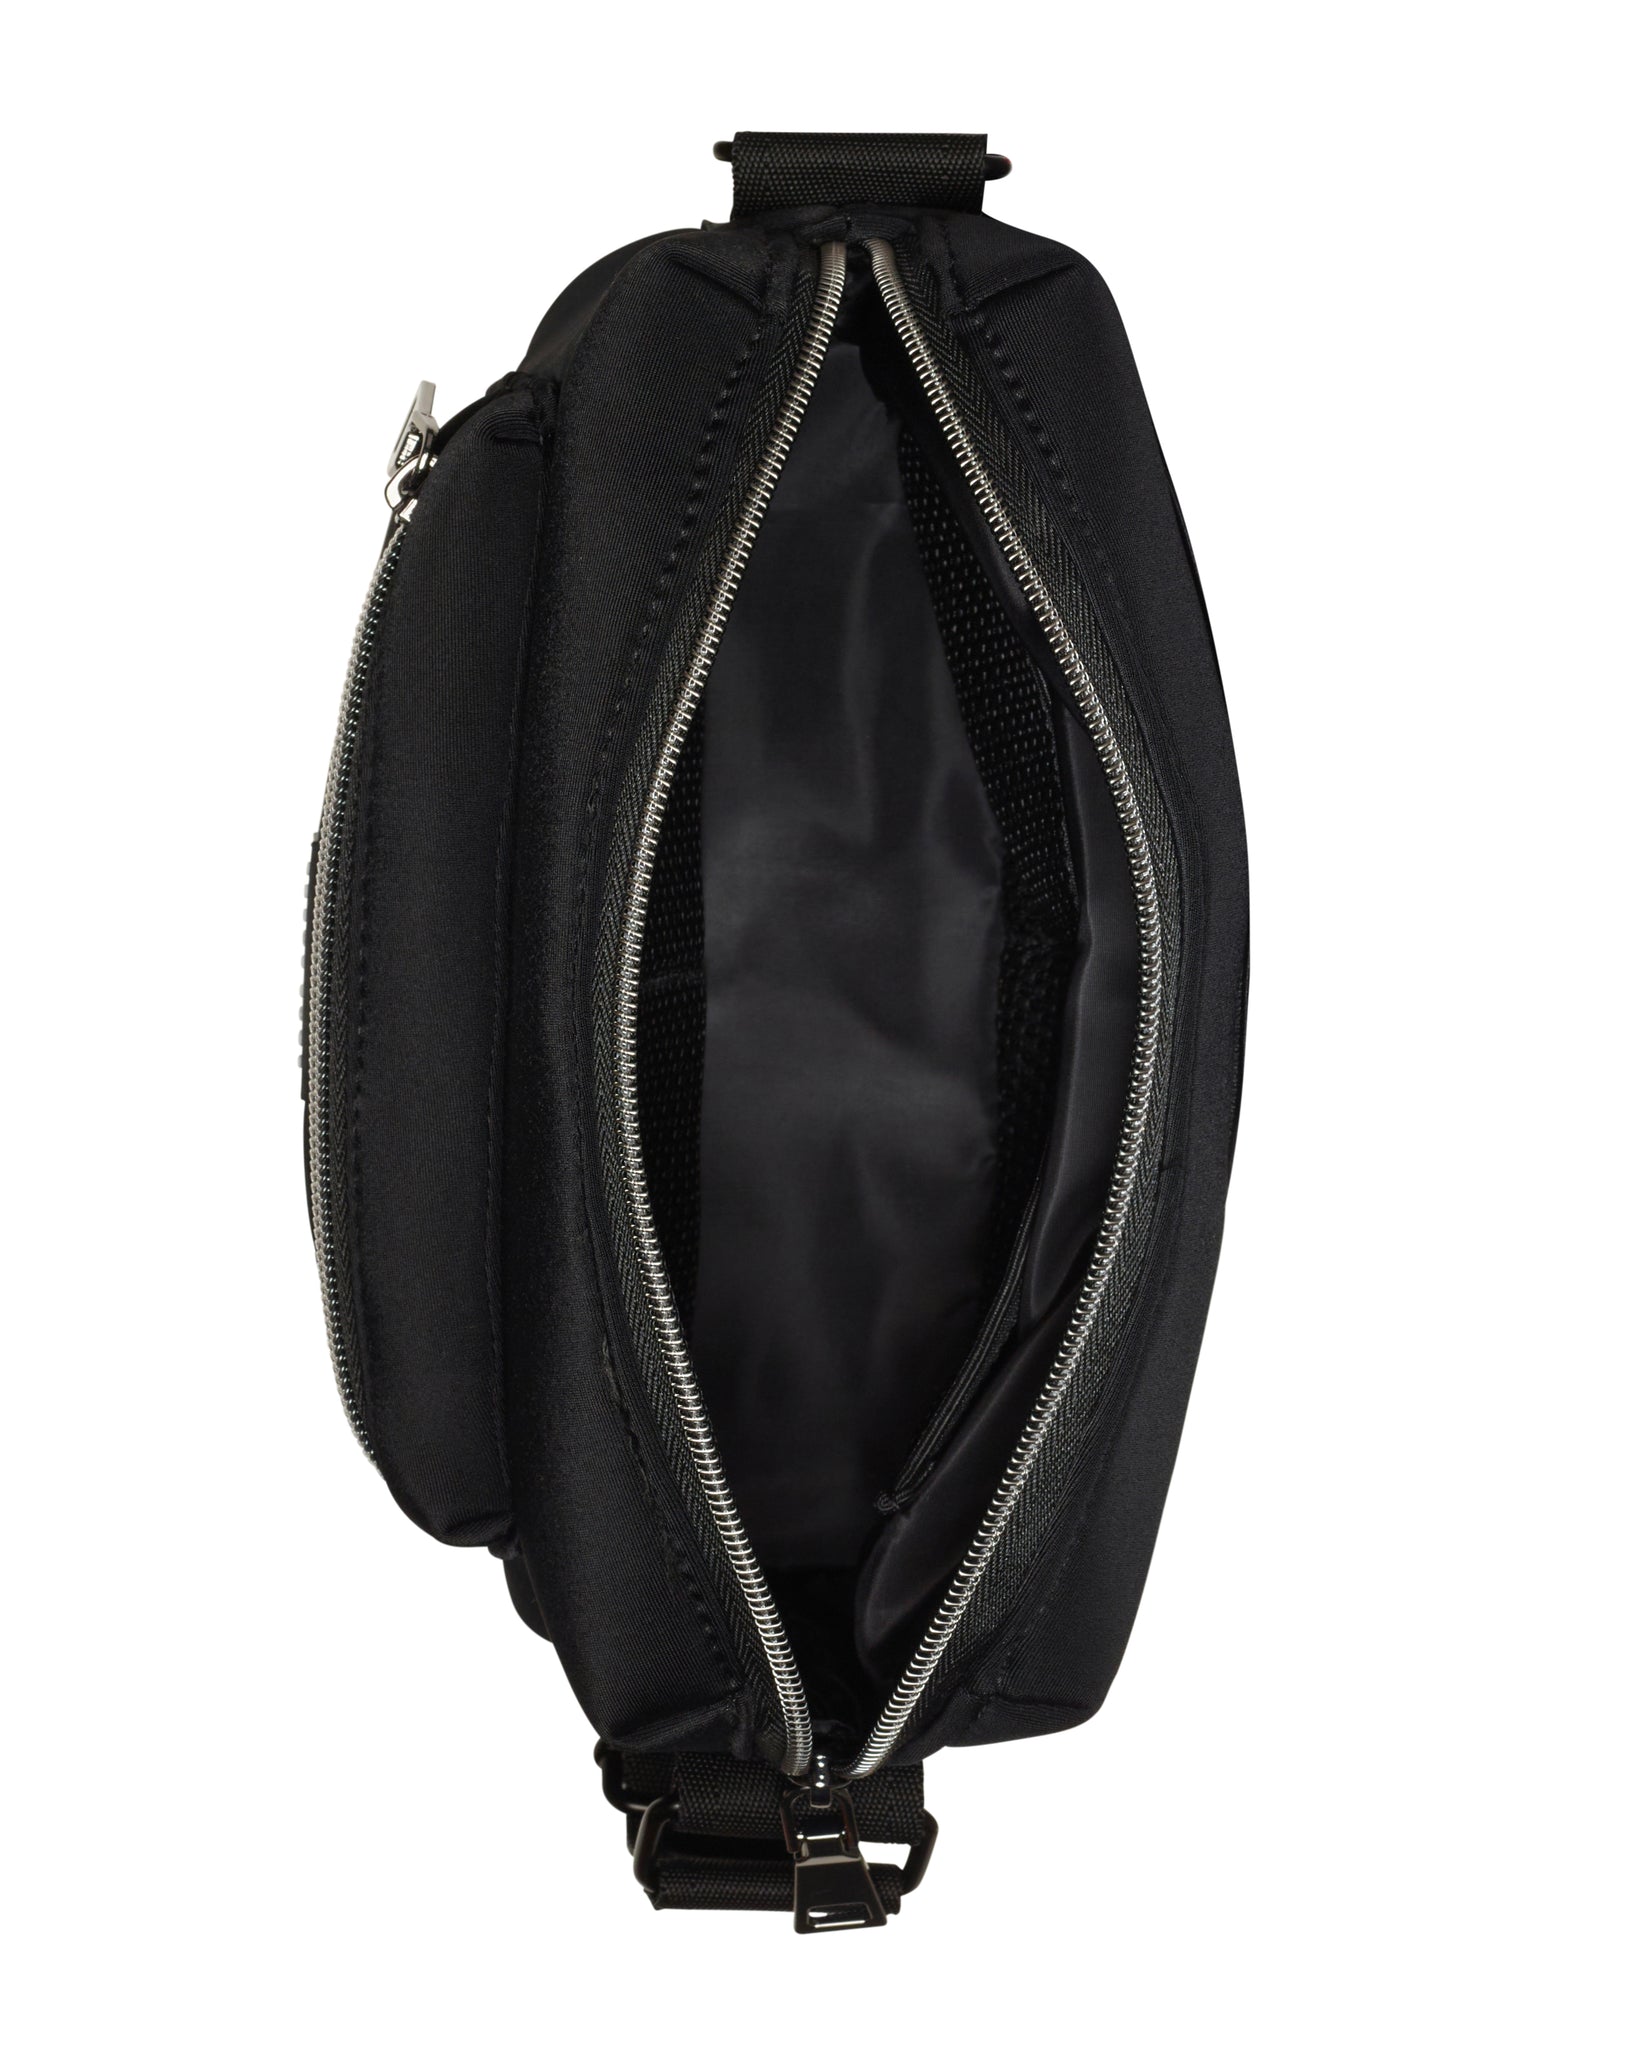 The Otto Bag (BLACK) Neoprene Crossbody Bag